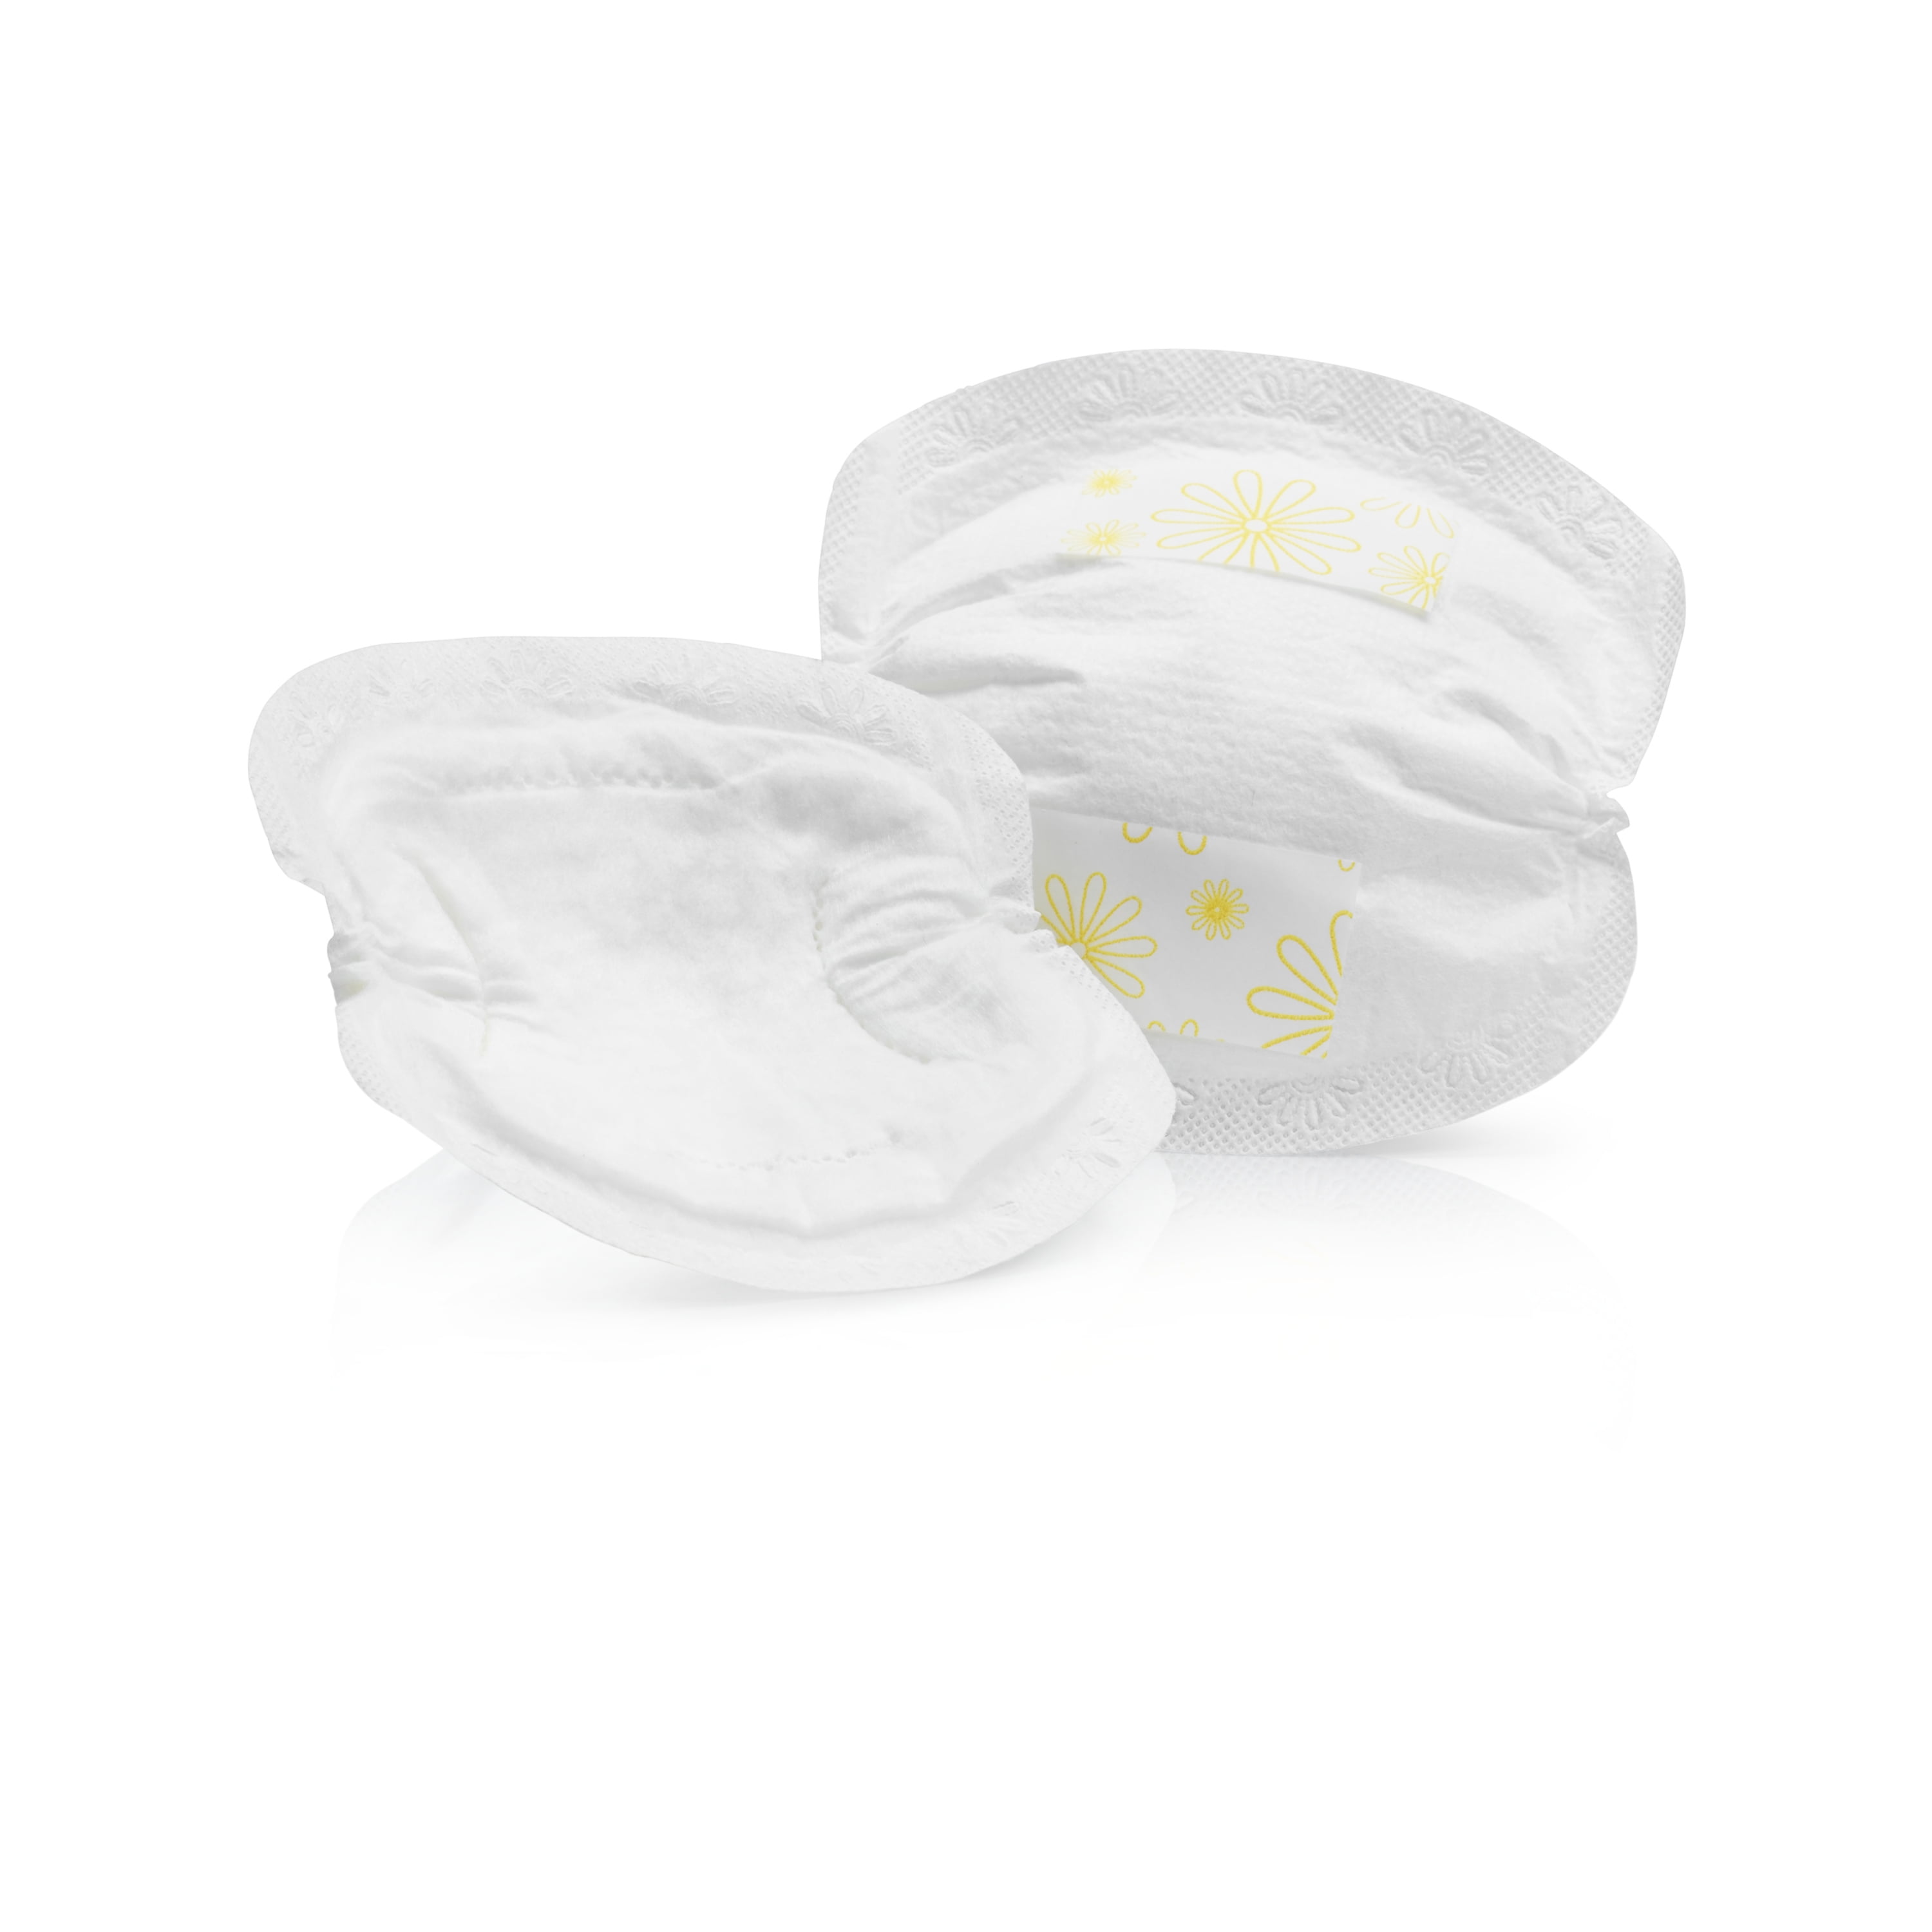 Medela Safe & Dry Disposable Nursing Pads - Ultra-Absorbent